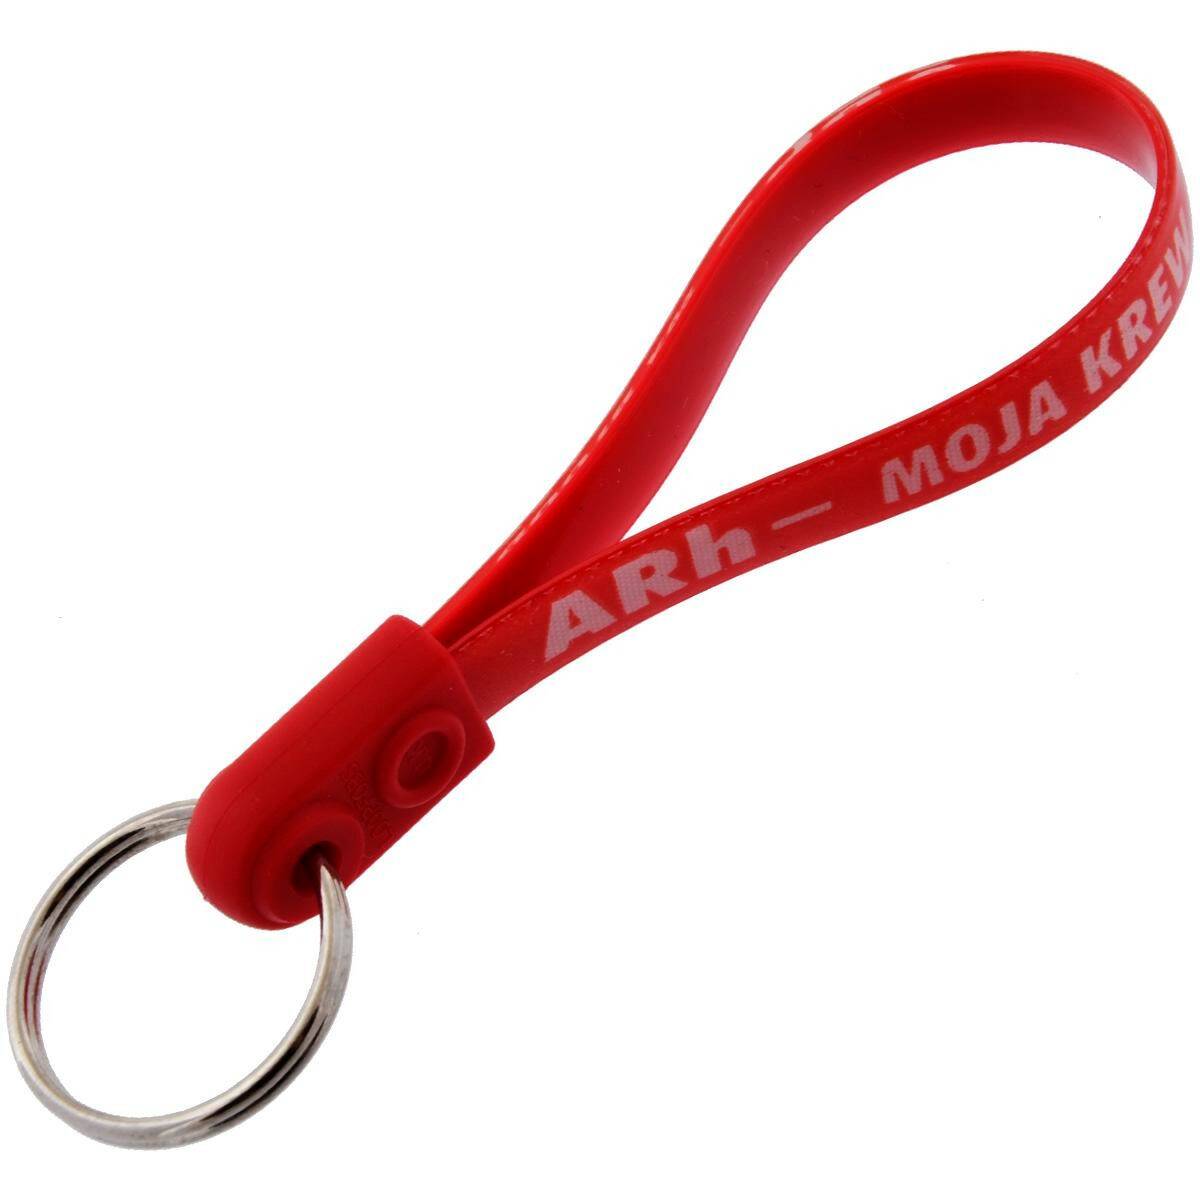 Schlüsselanhänger mit gürtel - ARh- MOJA KREW